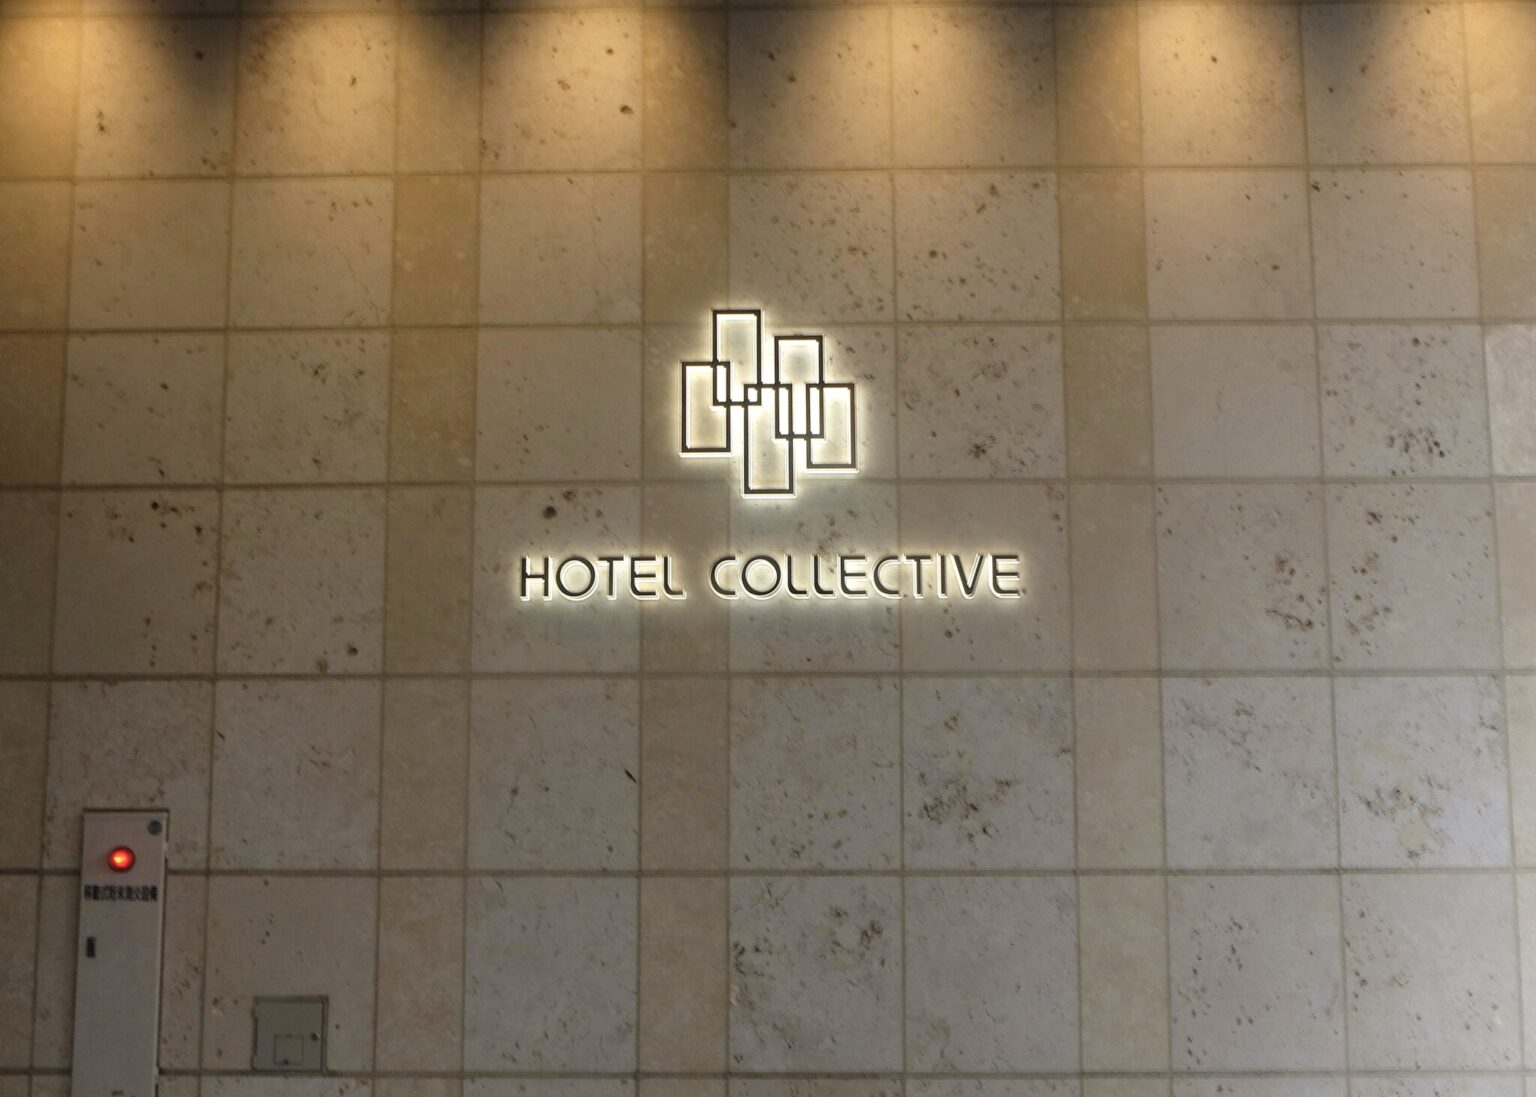 ５つの窓が重なるホテルのロゴには、“五感を解き放つ場所”というメッセージが。琉球石灰岩を使った外壁も沖縄ならでは。